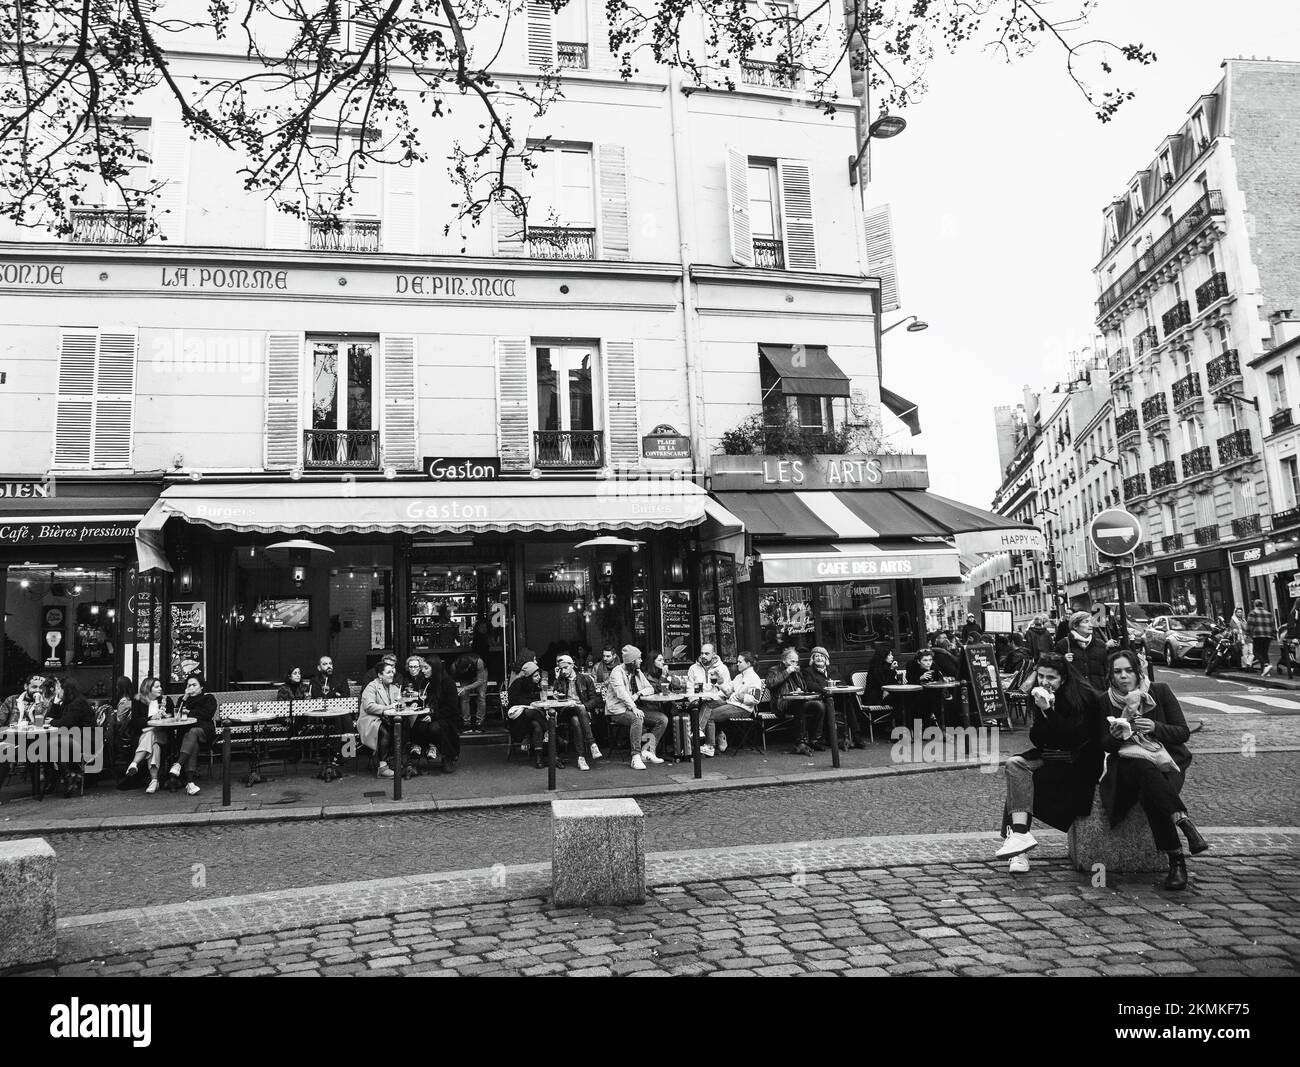 Paris, Frankreich - 13. November 20212: Contrescarpe Square in der Nähe der berühmten Mouffetard Street im Quartier Latin. Die Leute amüsieren sich in Cafés. Schwarz-weiß Stockfoto